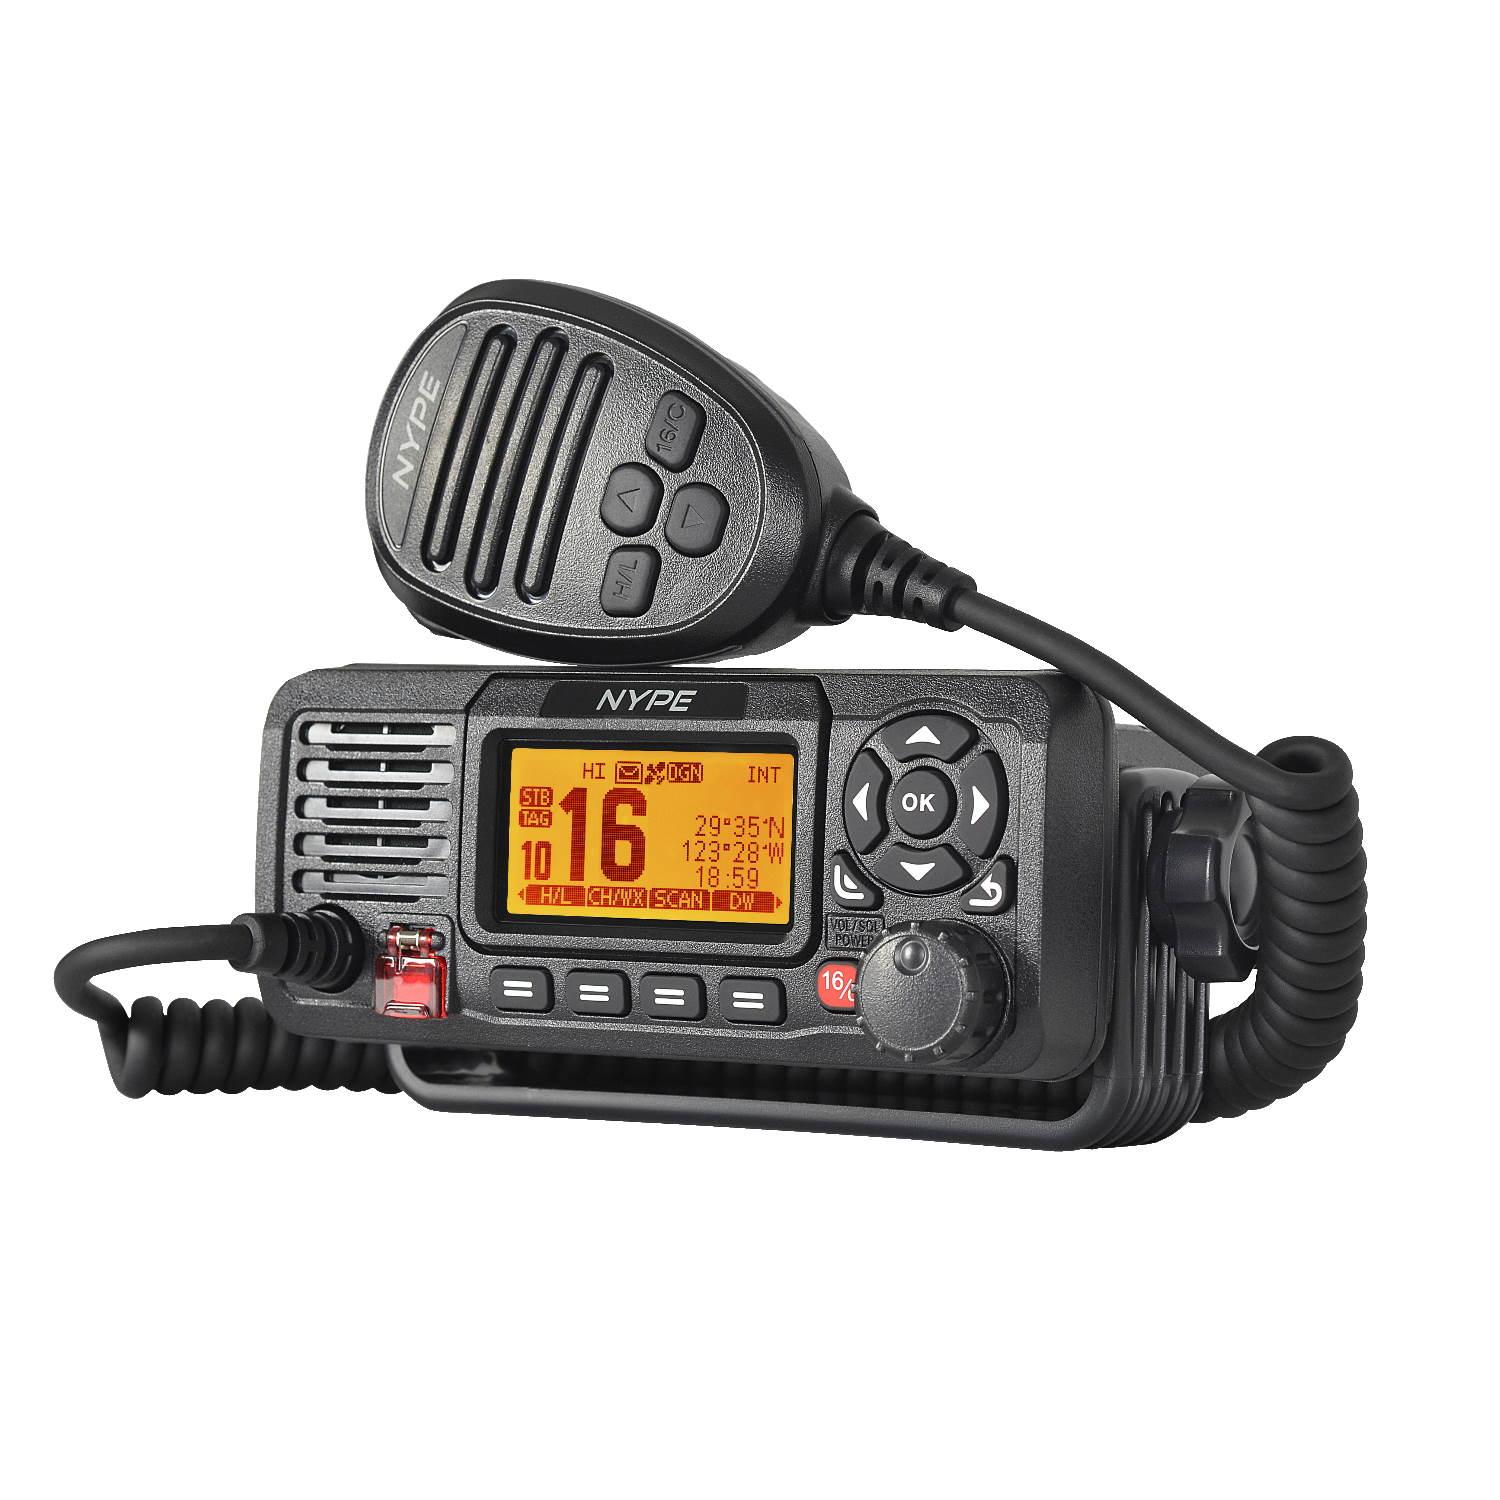 Radio VHF NYPE con DSC y